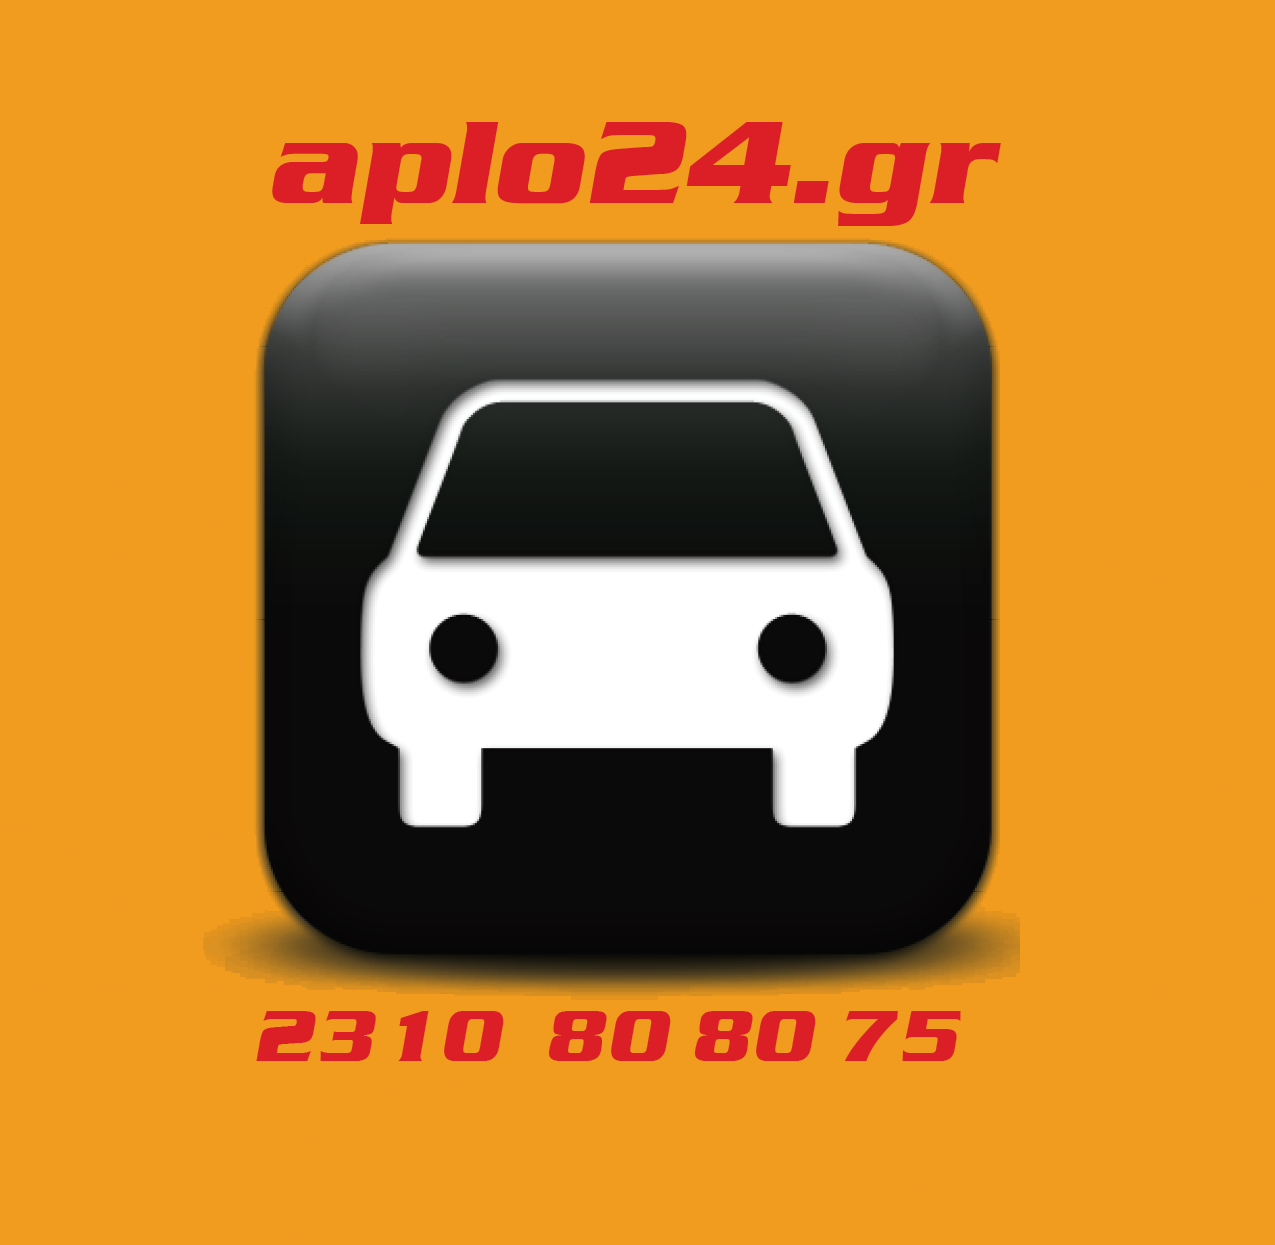 www.aplo24.gr